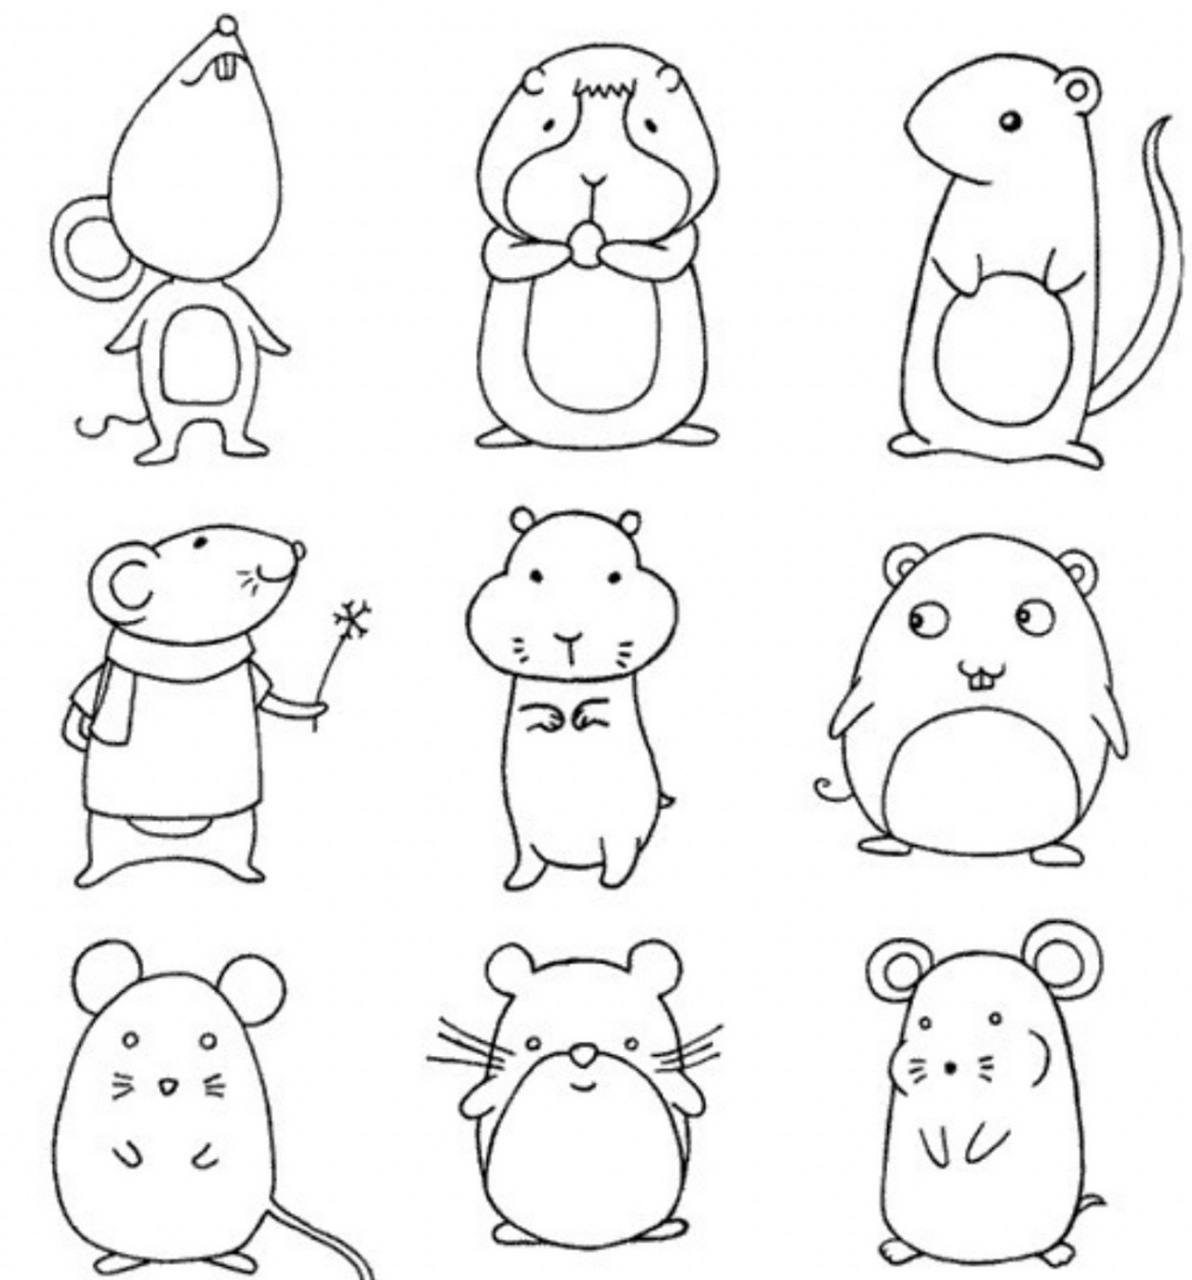 十二生肖简笔画老鼠图片